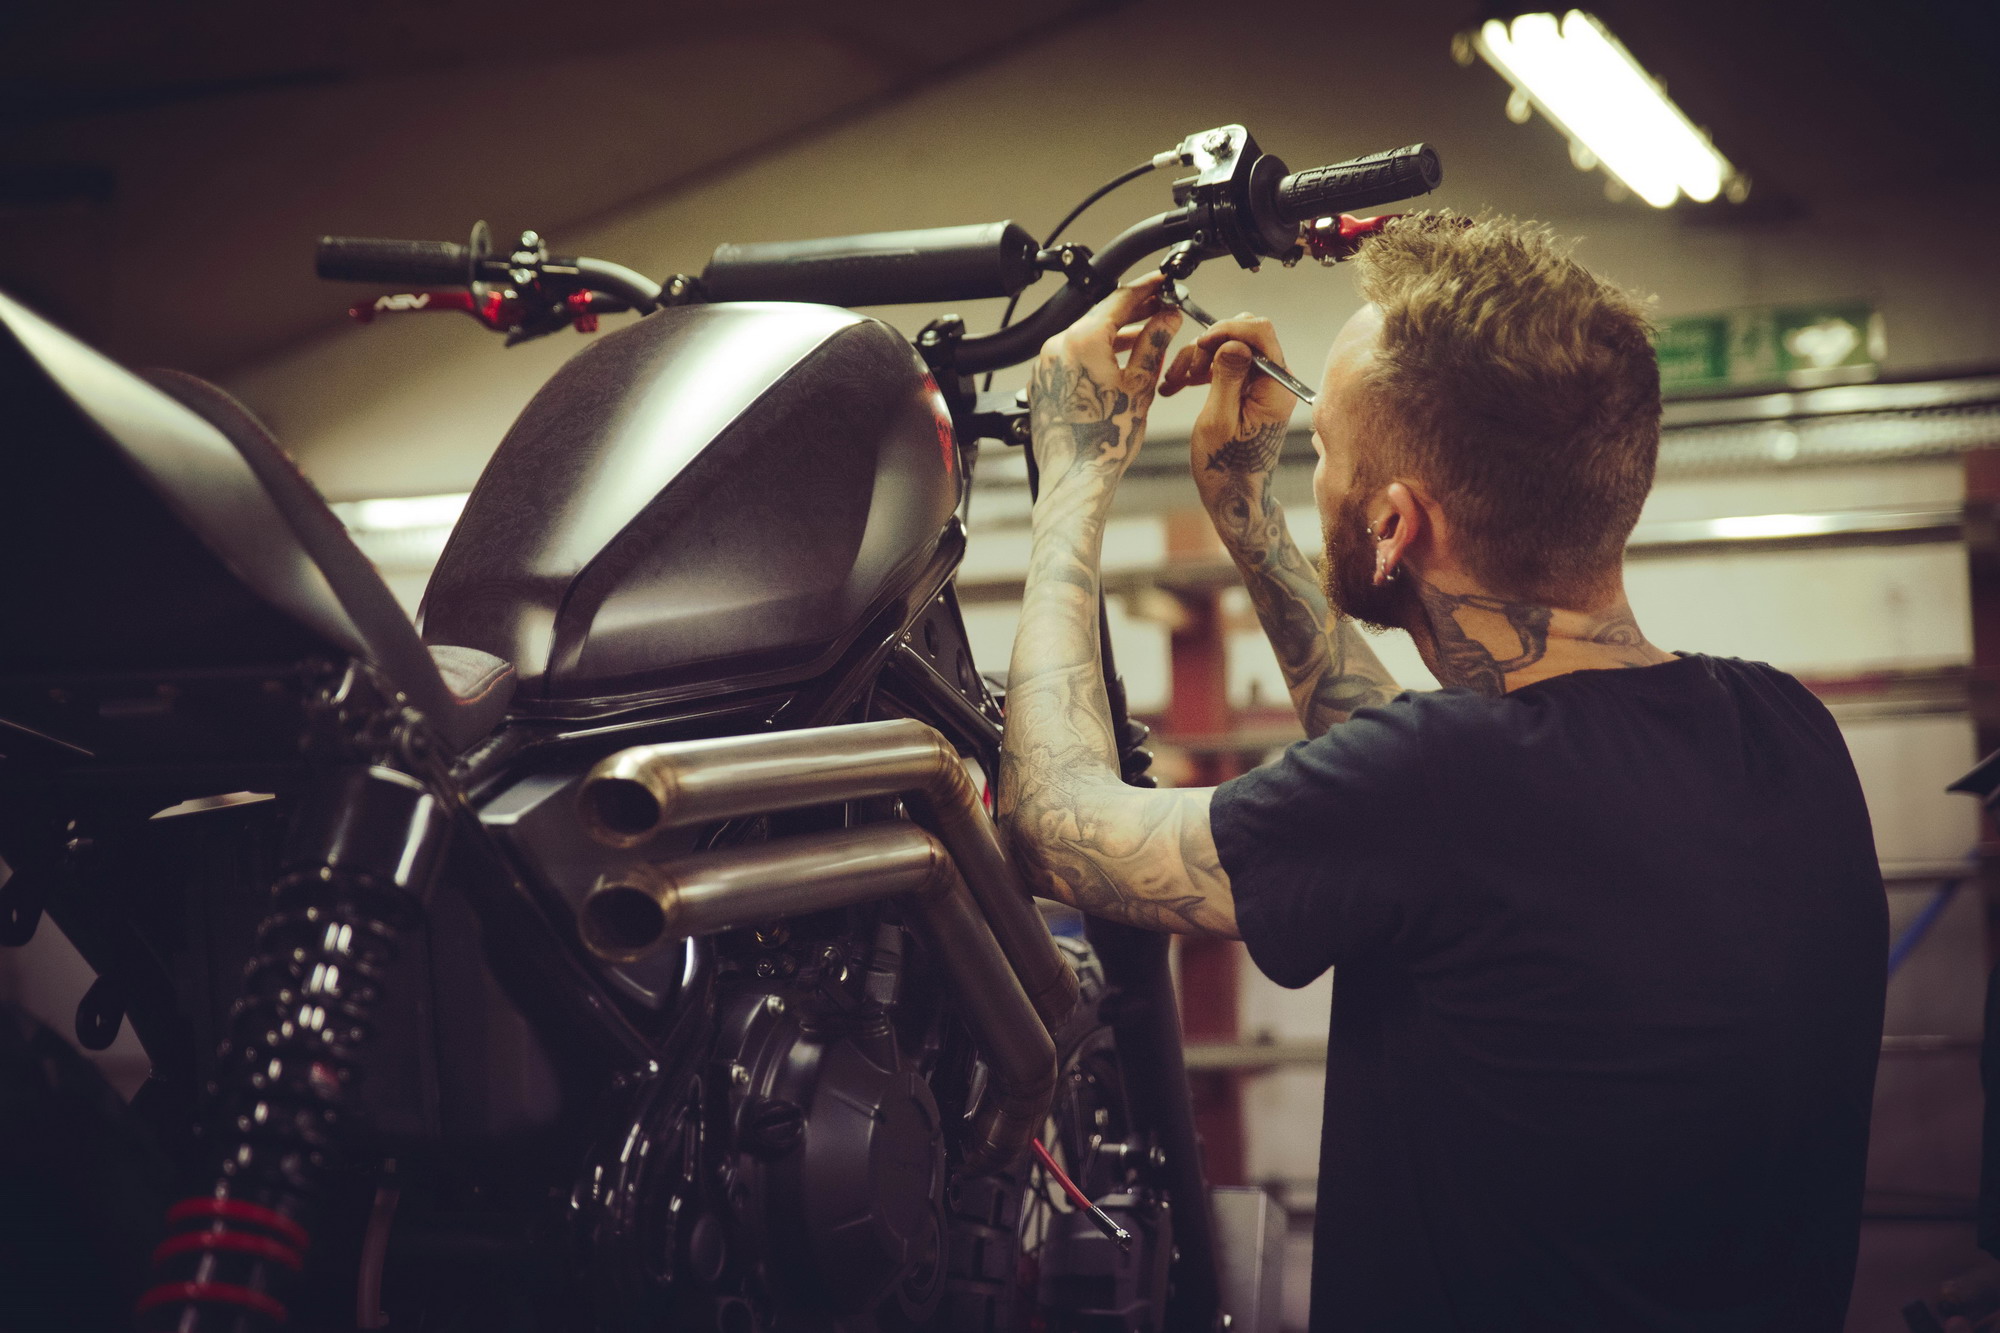 哈雷路王涂装定制 给你的车来一个纹身 #摩托车##机车#机车#哈雷#_摩托车社区_易车社区